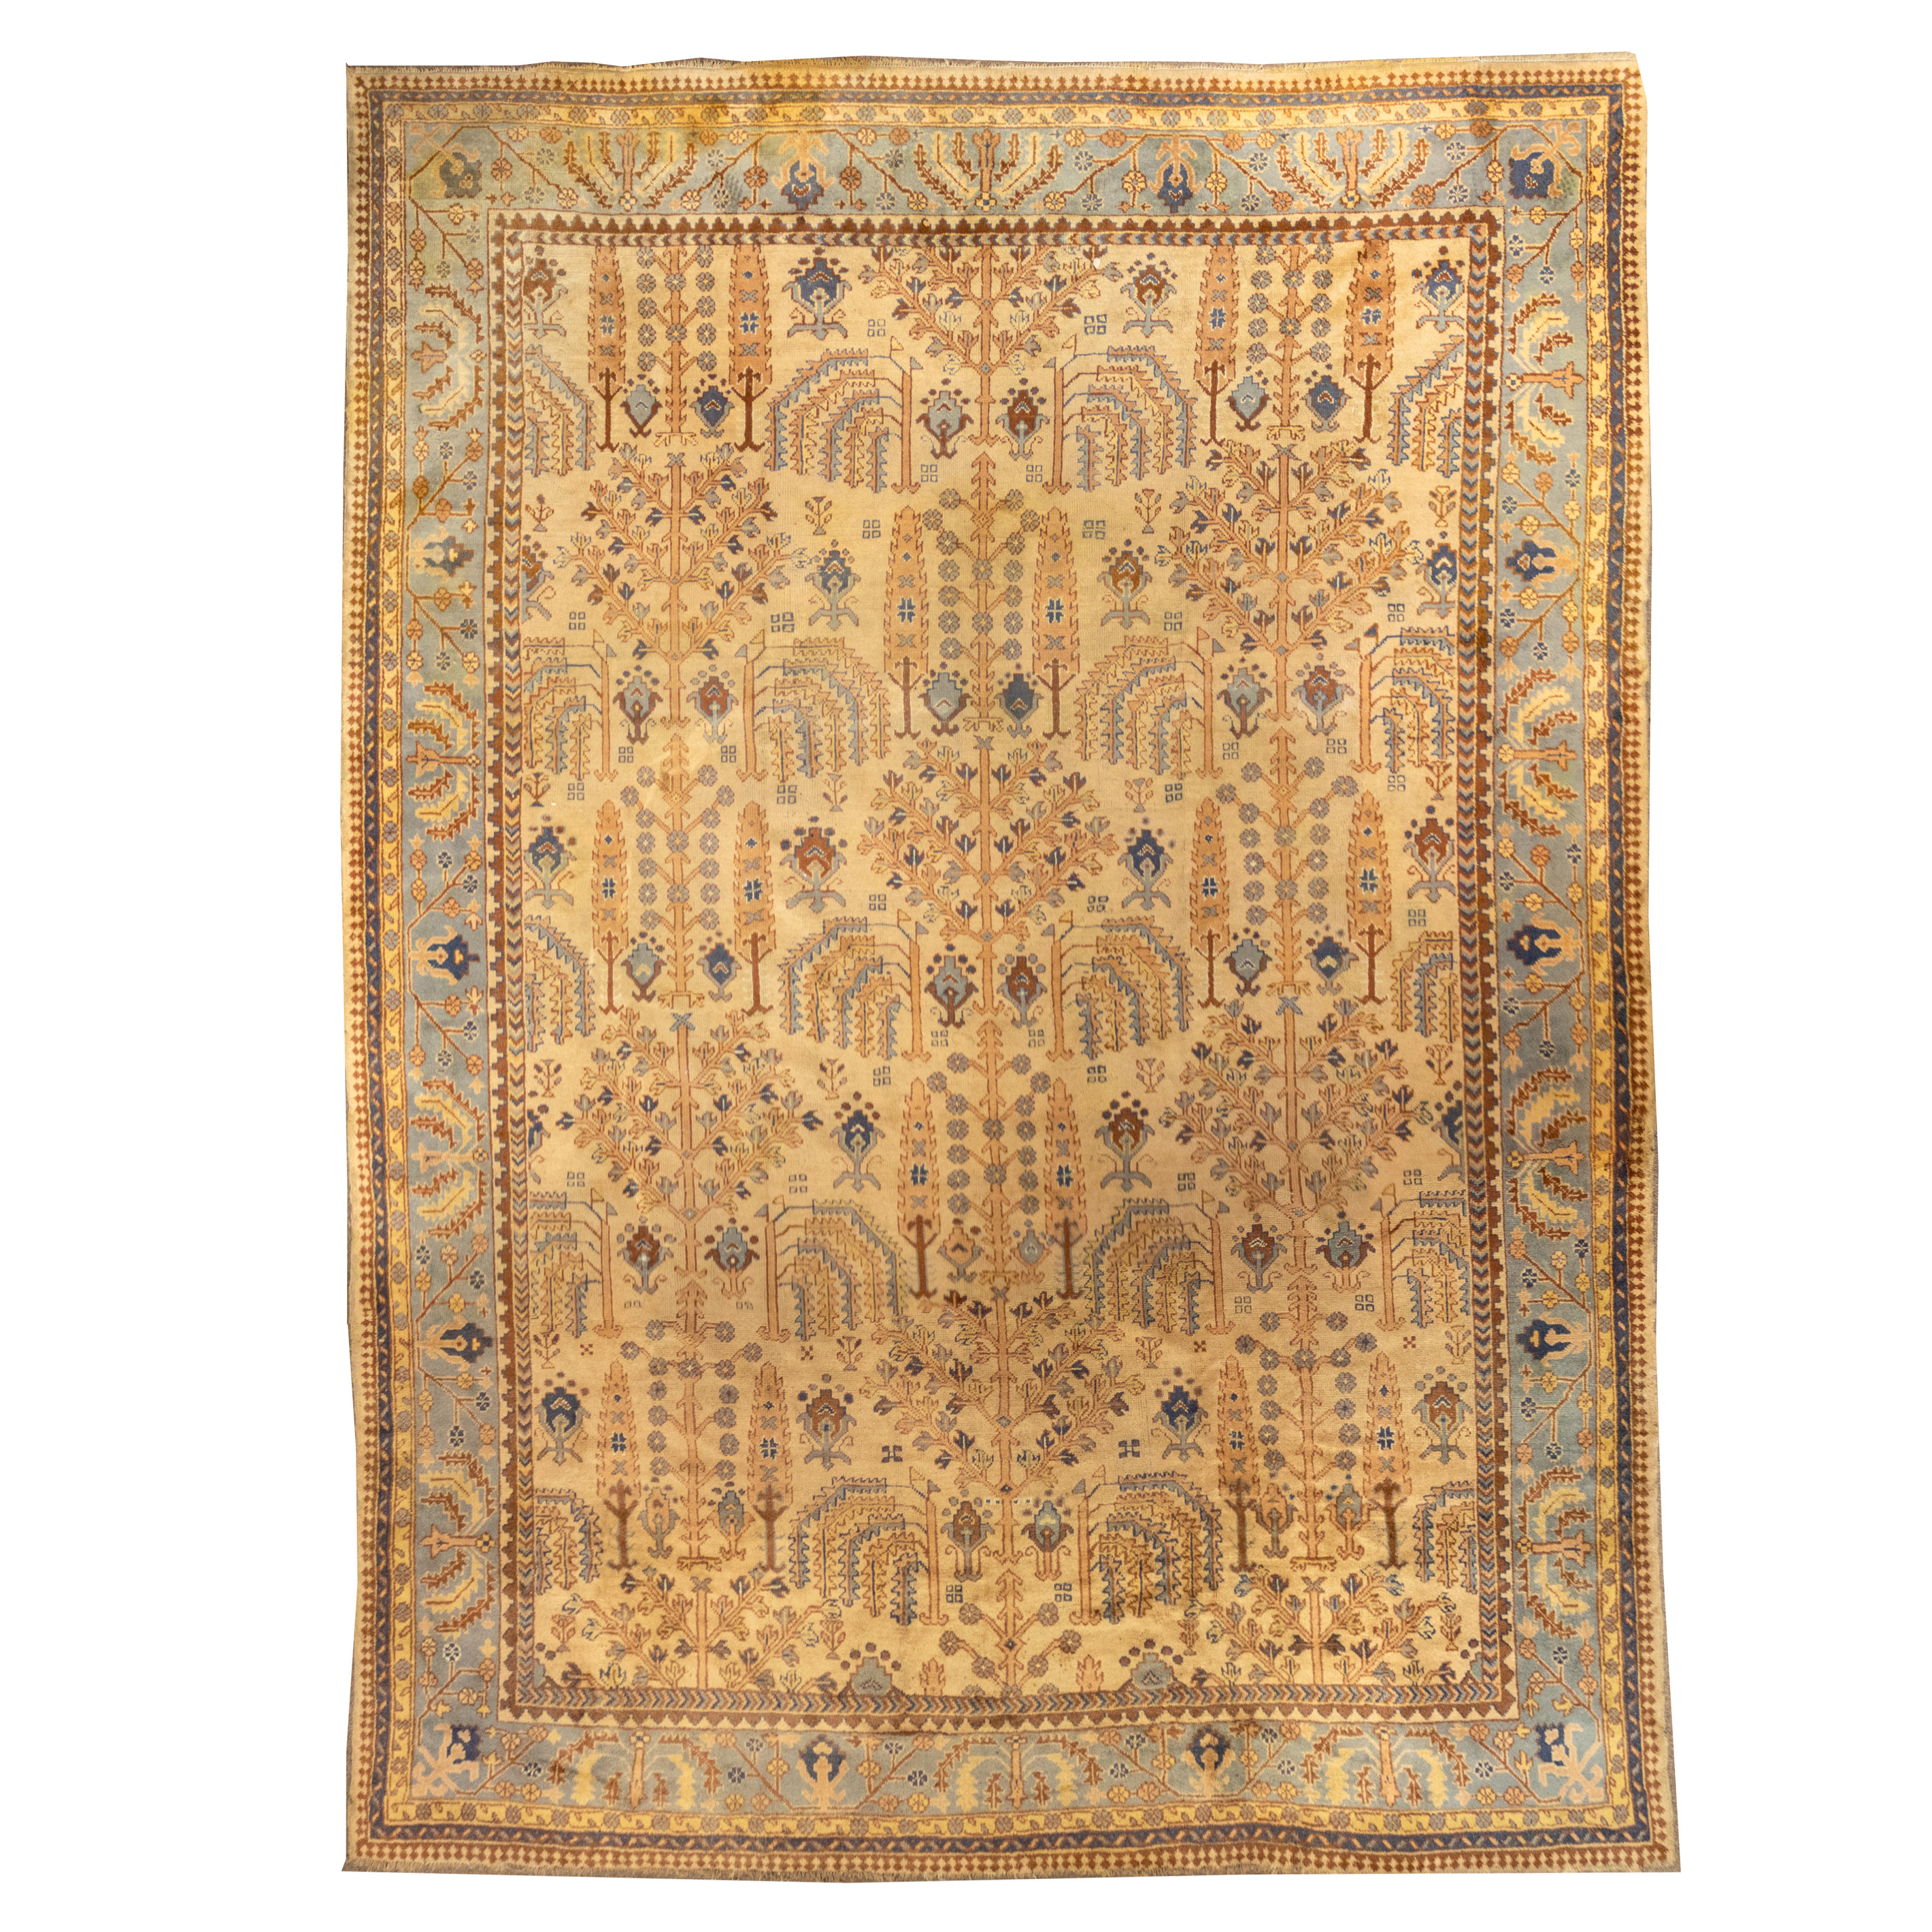 TURKISH CARPET Turkish carpet  3a46c1